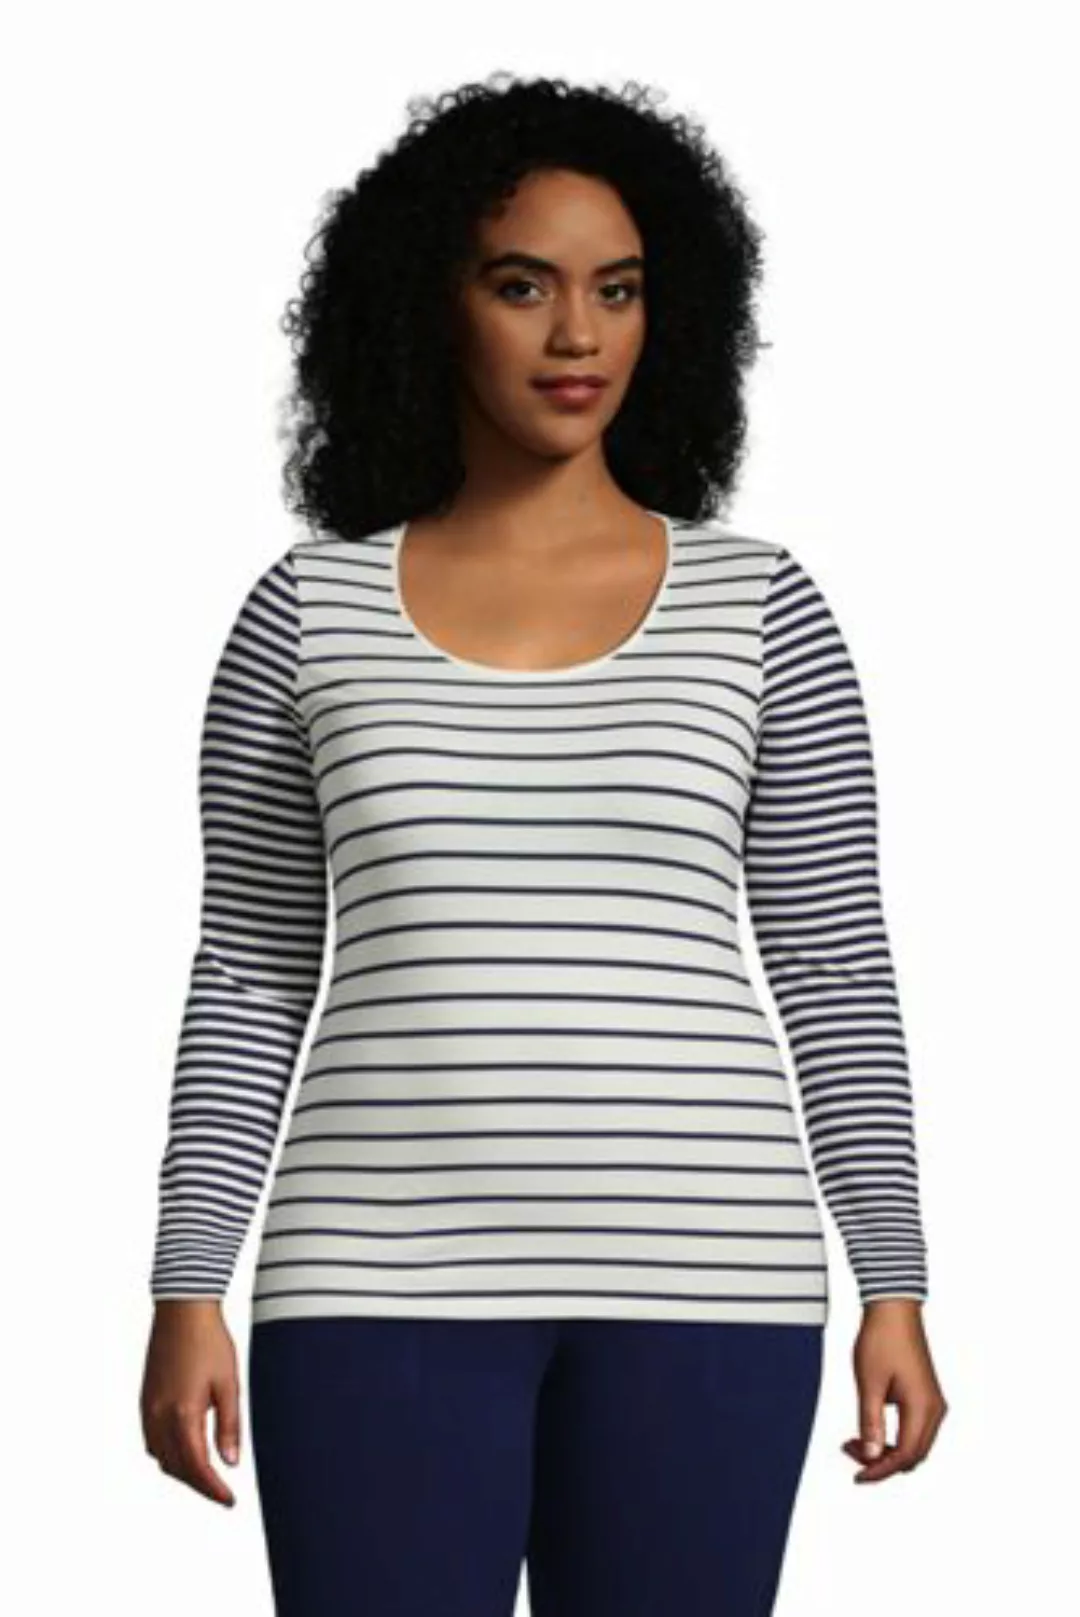 Shirt aus Baumwoll/Modalmix Gestreift in großen Größen, Damen, Größe: 56-58 günstig online kaufen